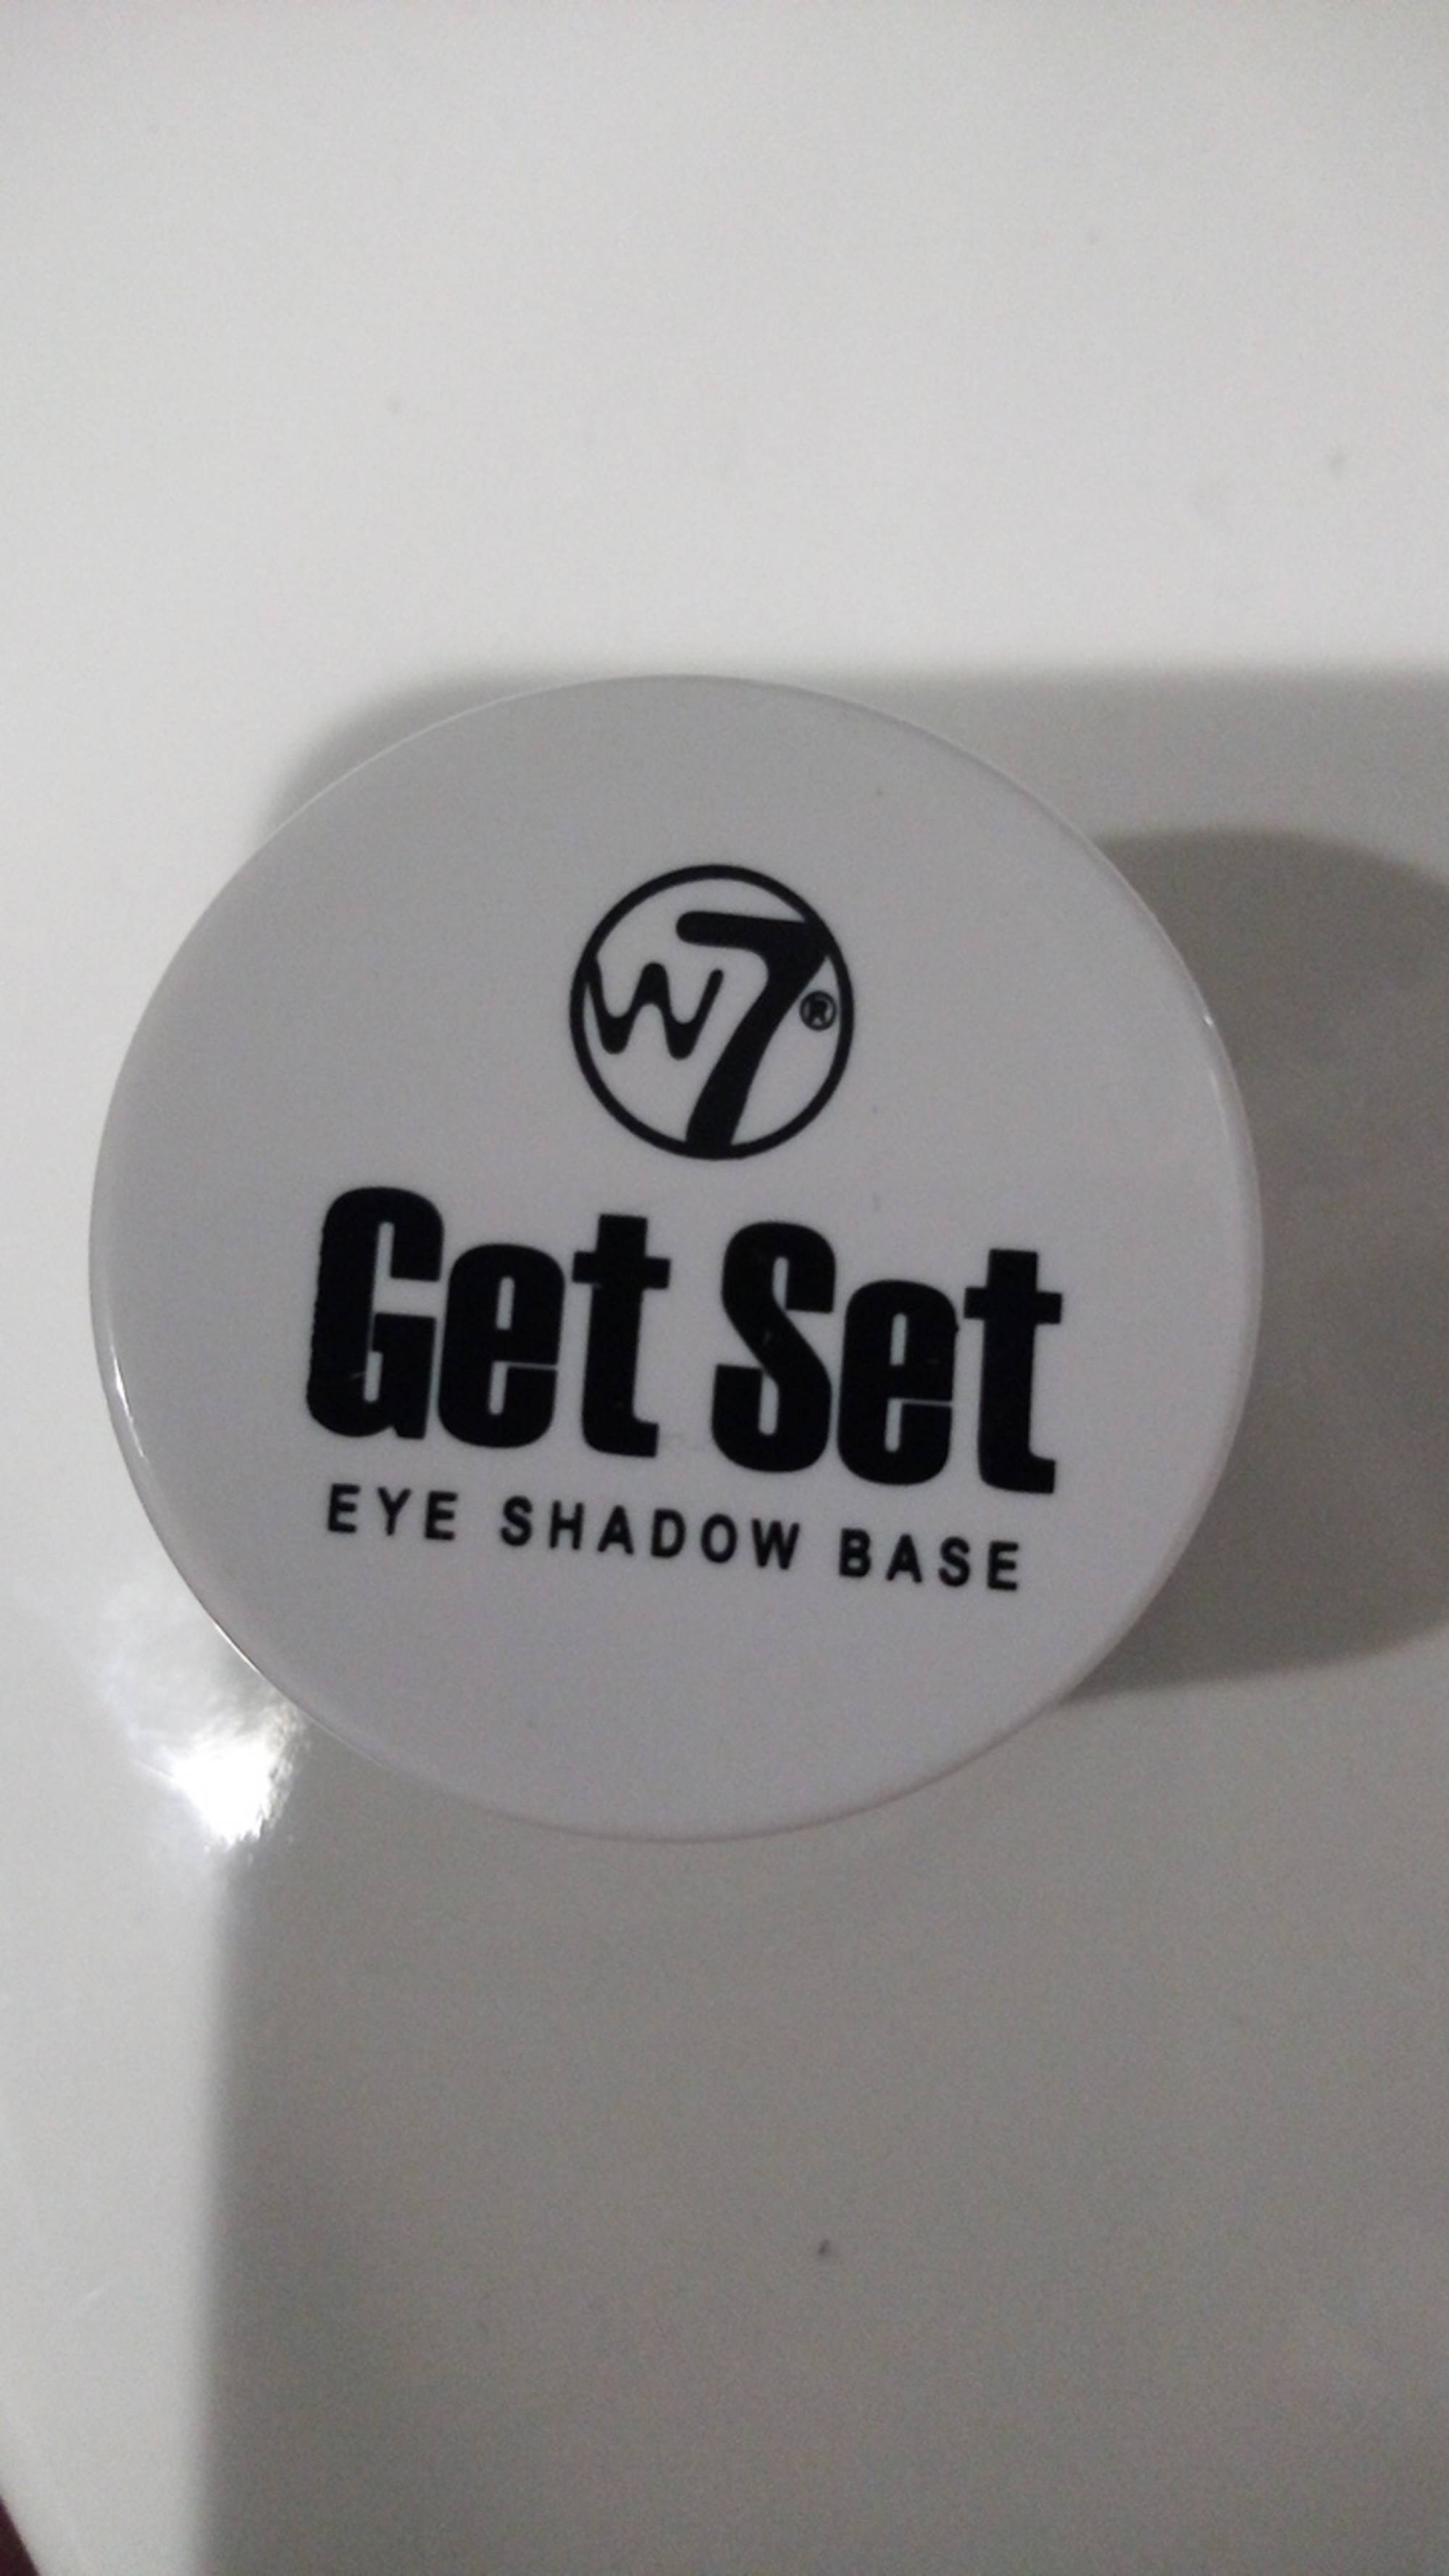 W7 - Get Set - Eye shadow base